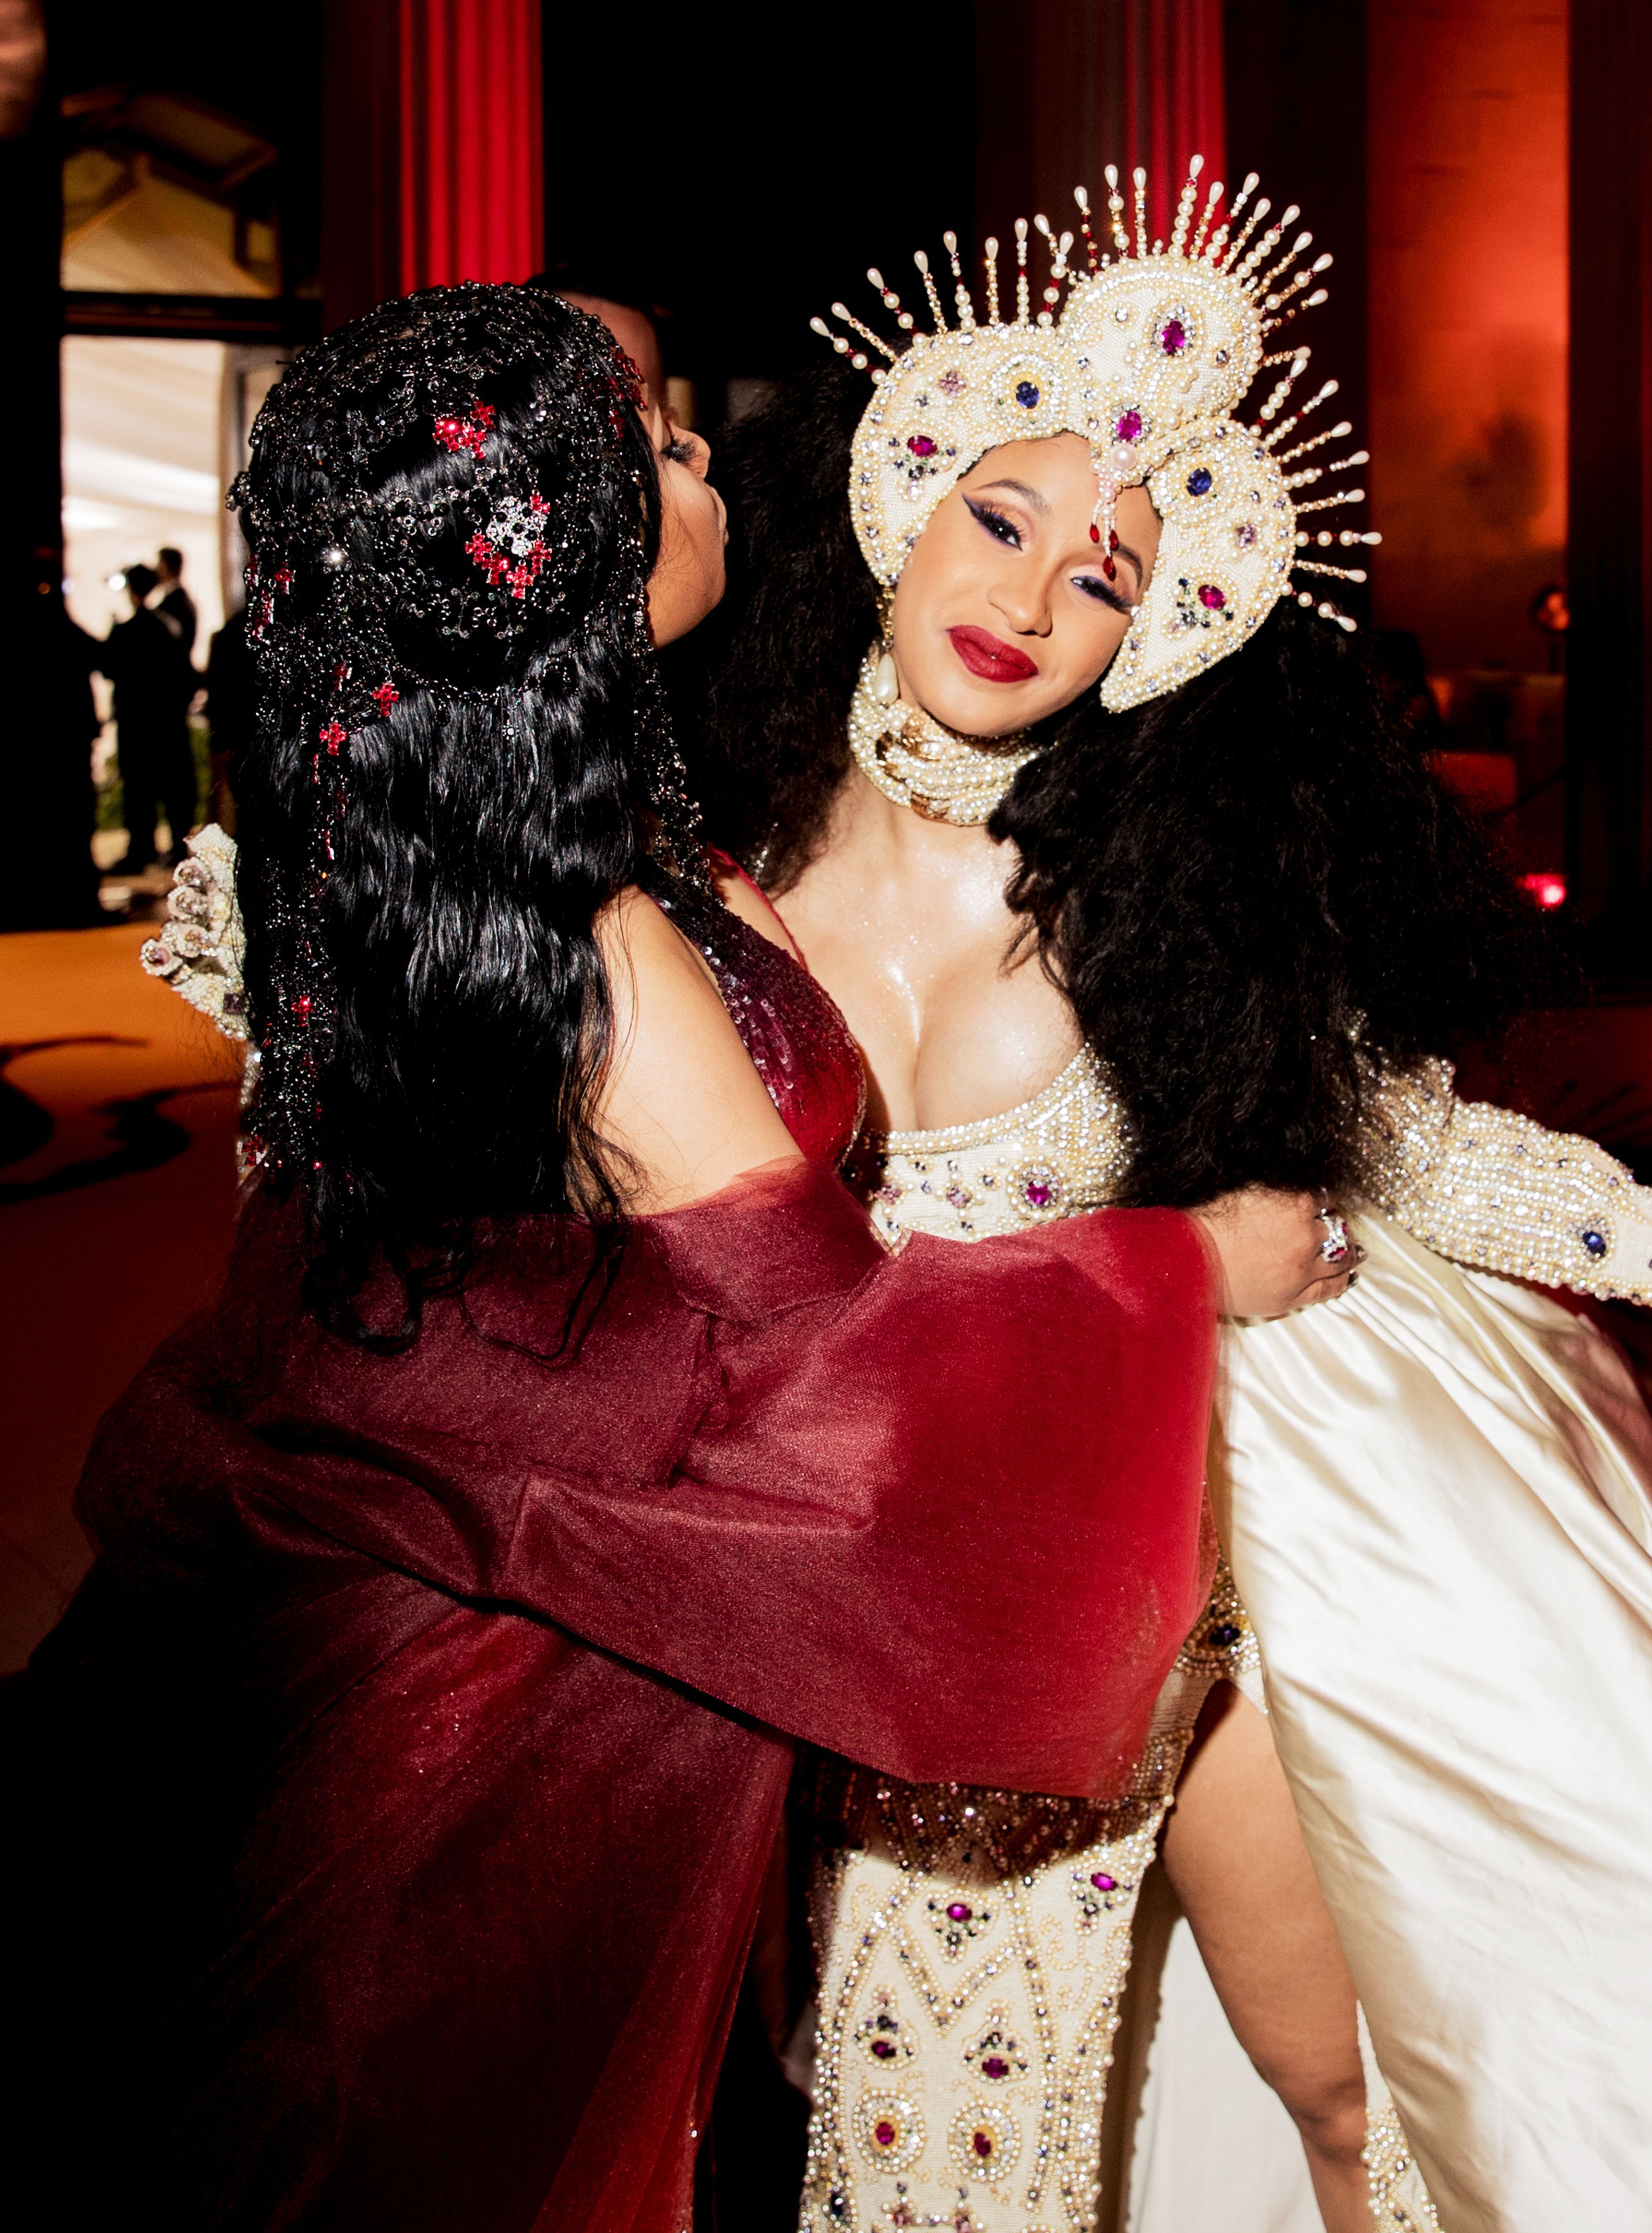 This Is What Cardi B & Nicki Minaj Were Talking About In That Viral Met Gala Photo. Met gala, Galas photo, Cardi b